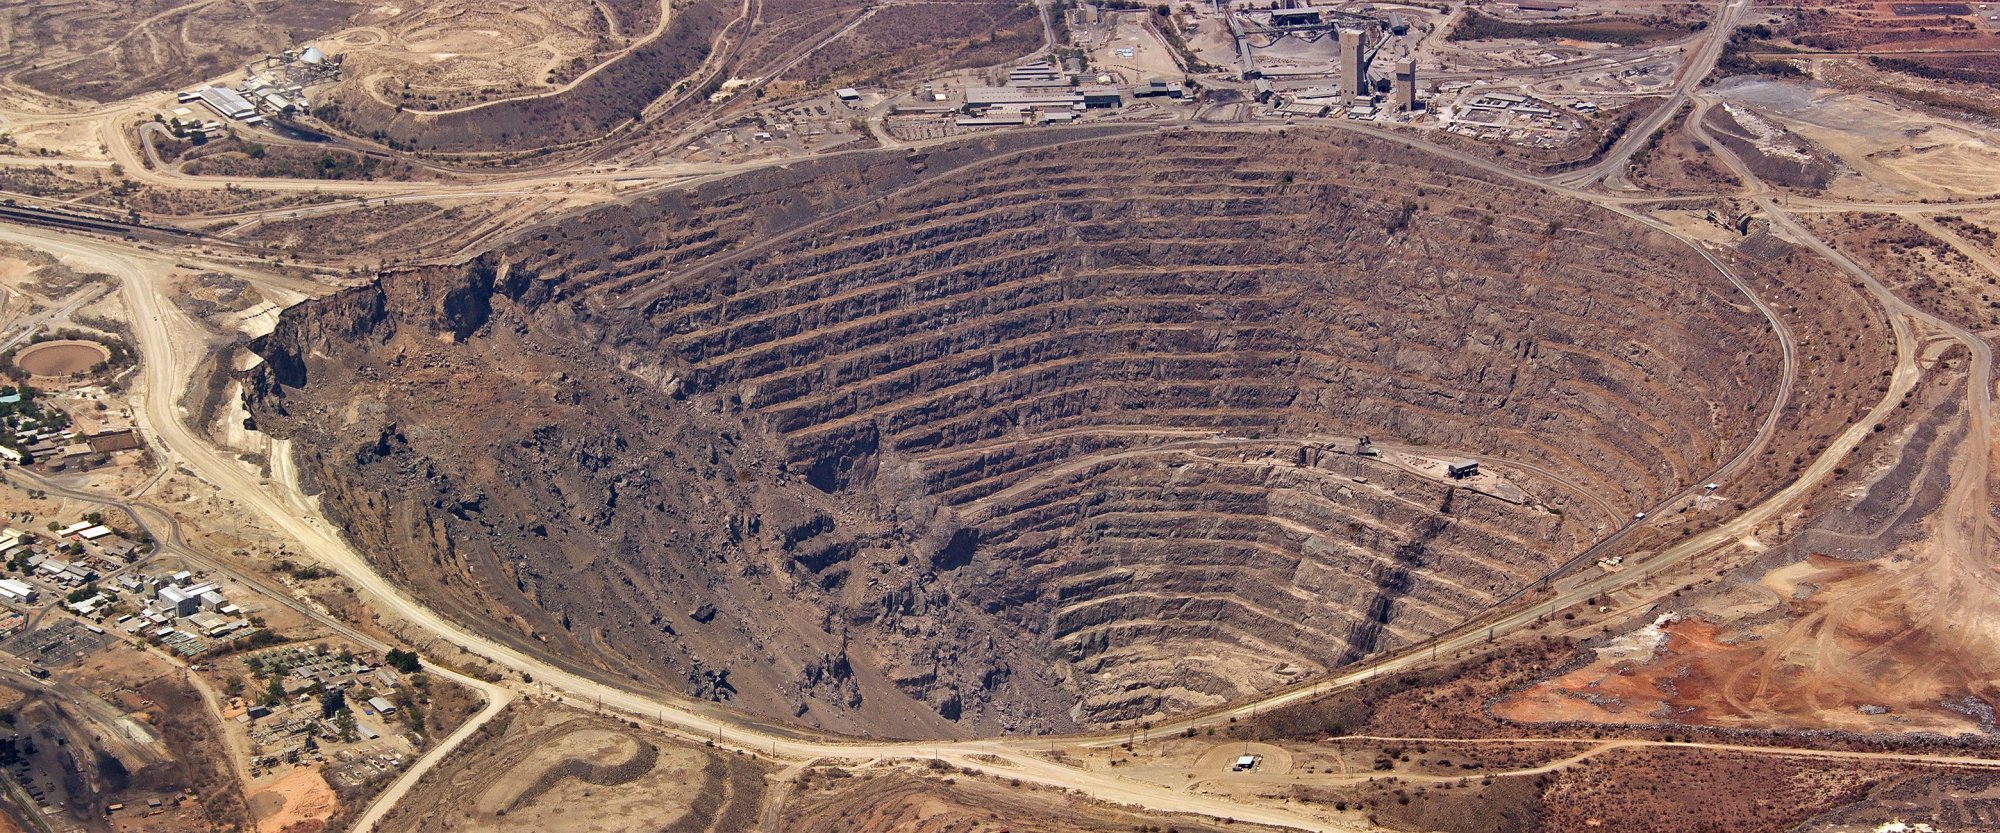 Brasil pode se posicionar como produtor confiável de minerais críticos, diz diretor da Vale